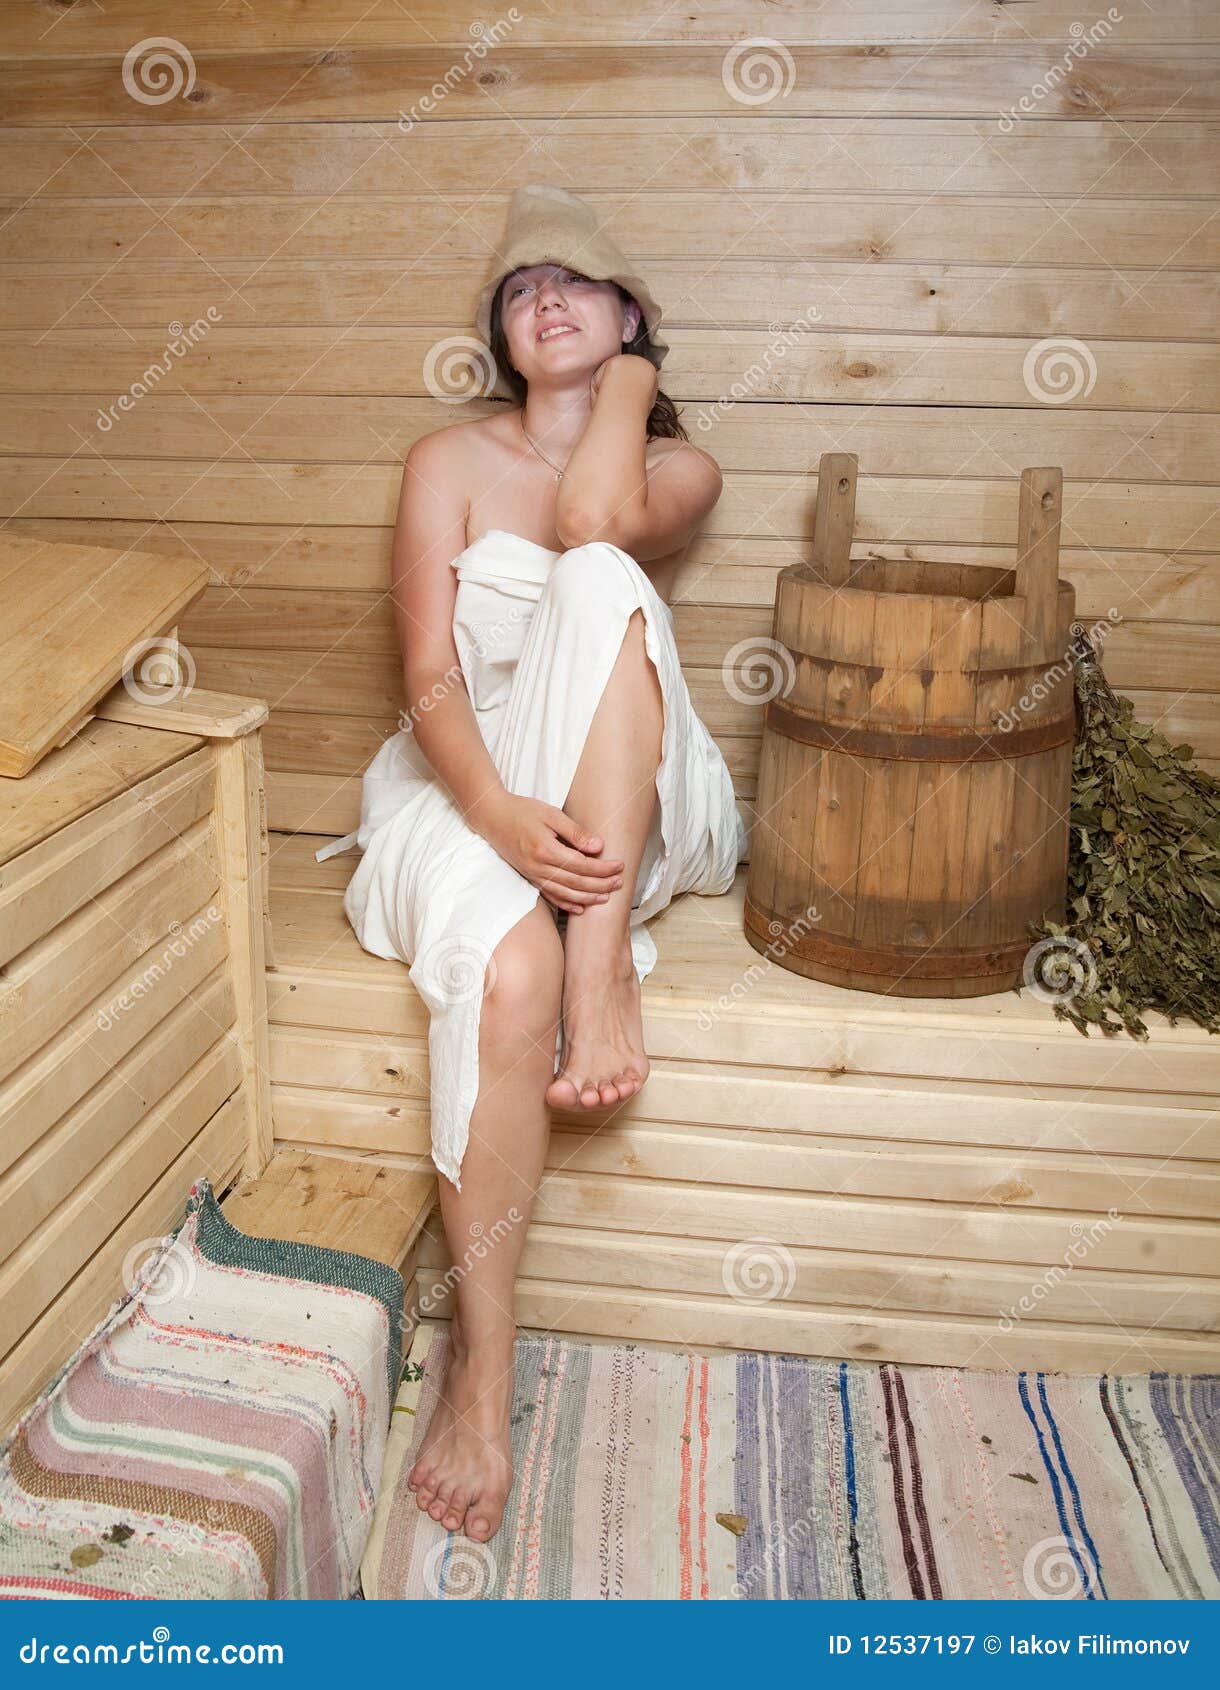 Русские женщины деревенской бане. Красивые девушки в бане. Женщины в деревенской бане. Деревенские девушки в бане.